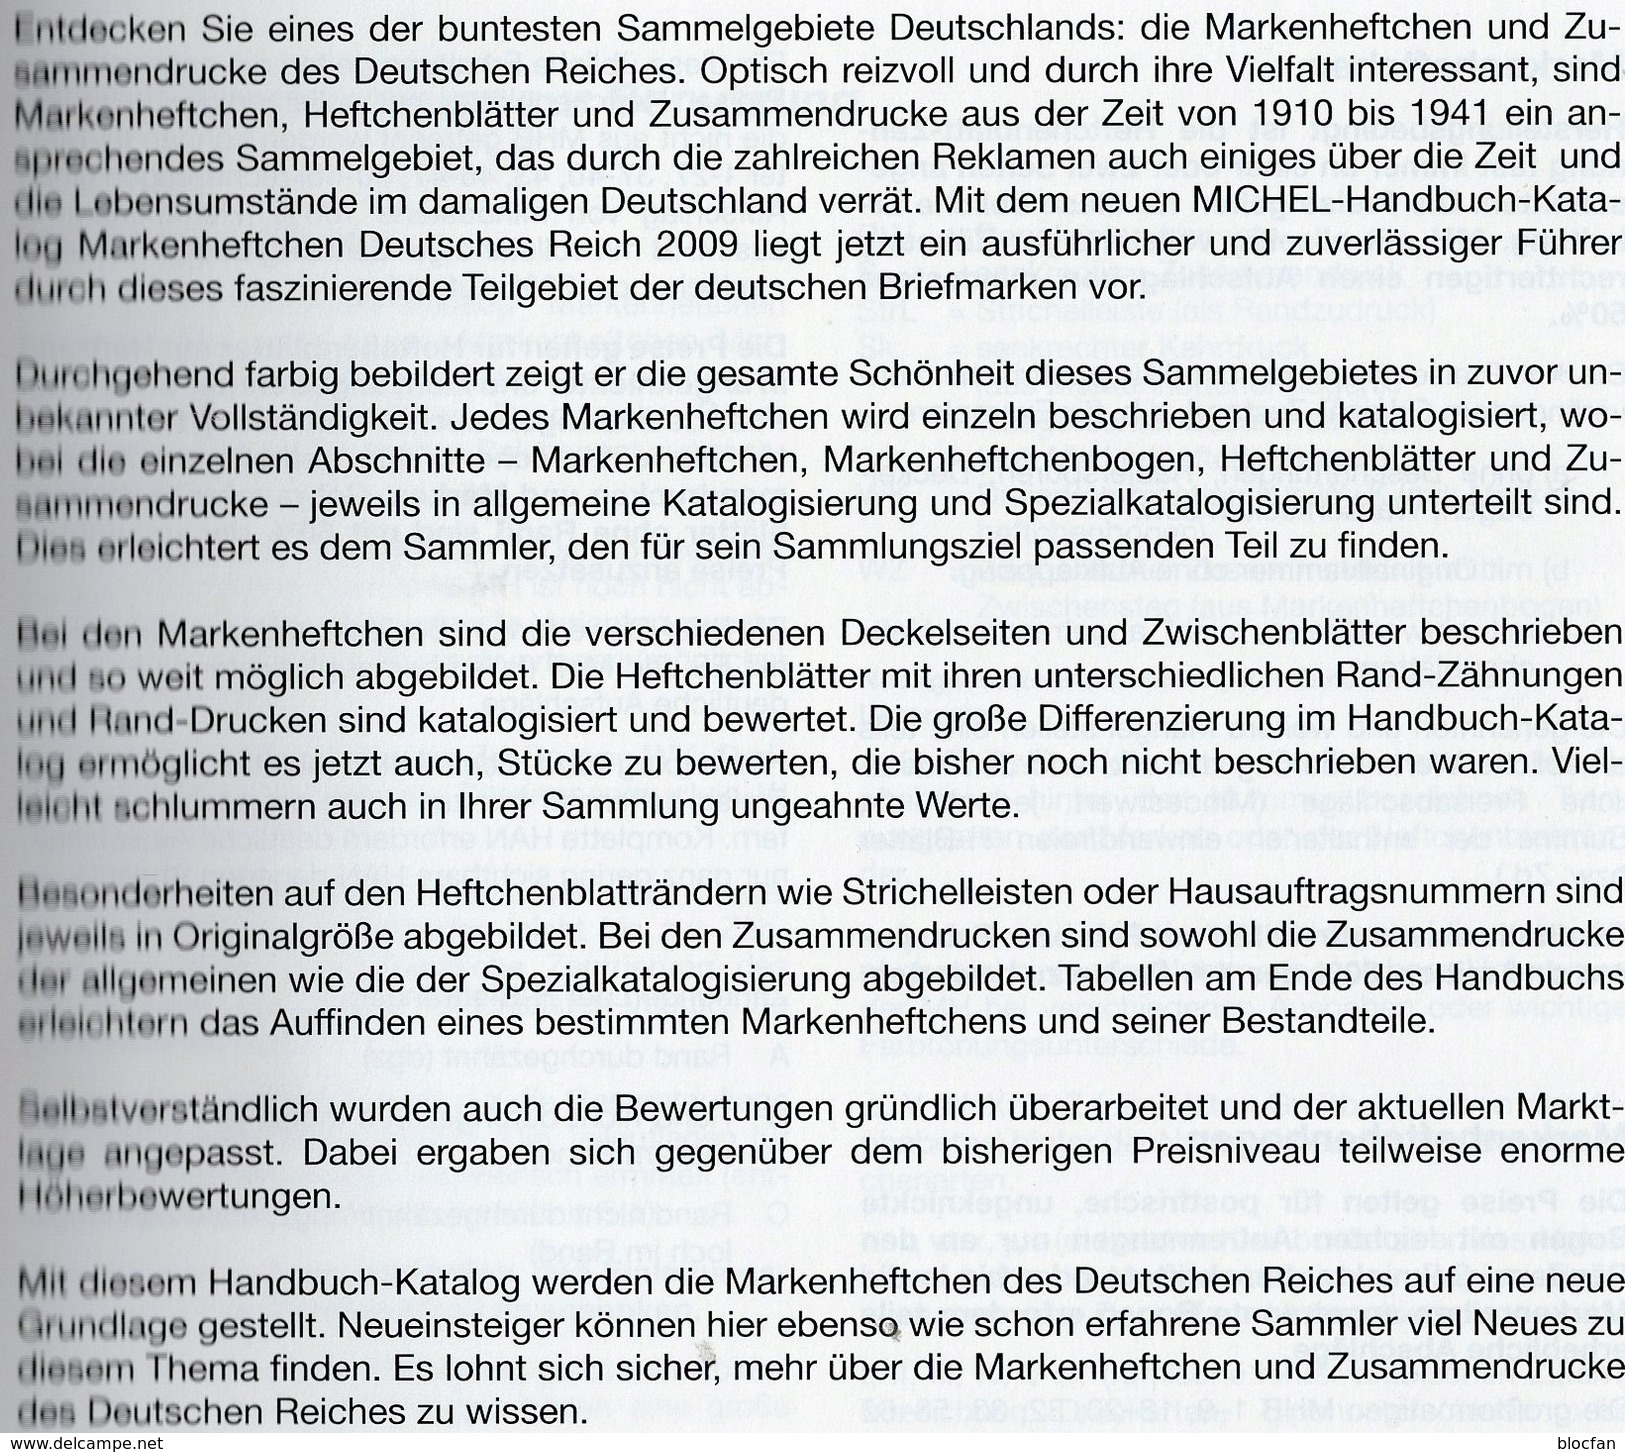 MlCHEL Handbuch Markenhefte Deutsche Reich 2009 New 98€ Handbook With Special Carnets Booklets Catalogue Of Germany - Handbooks